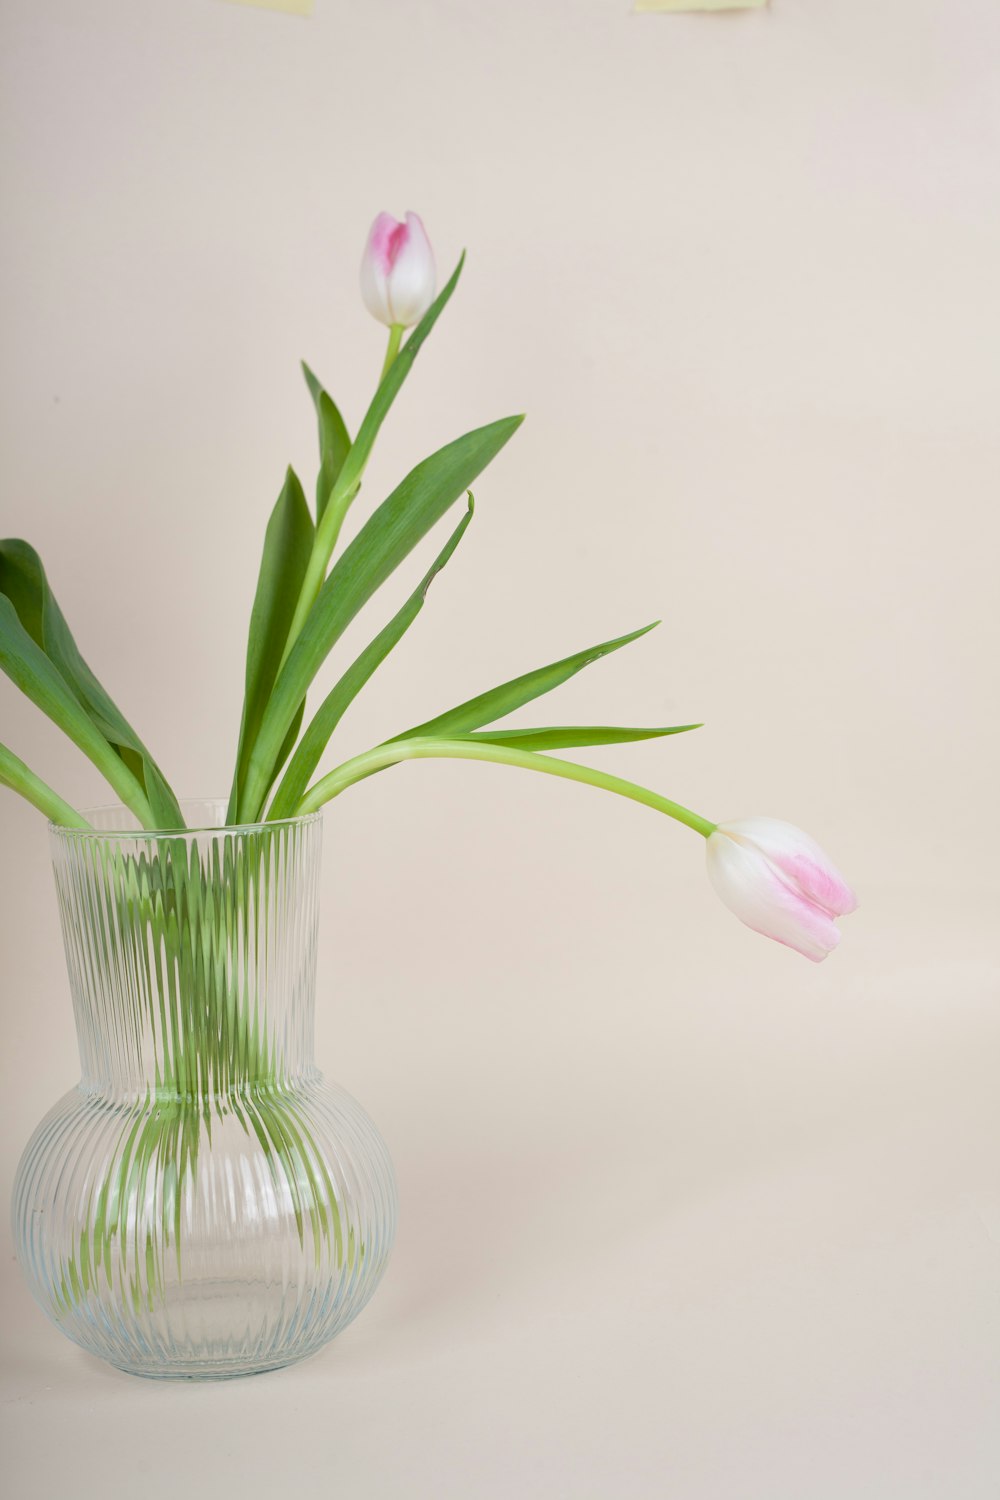 분홍색과 흰색 튤립으로 채워진 유리 꽃병